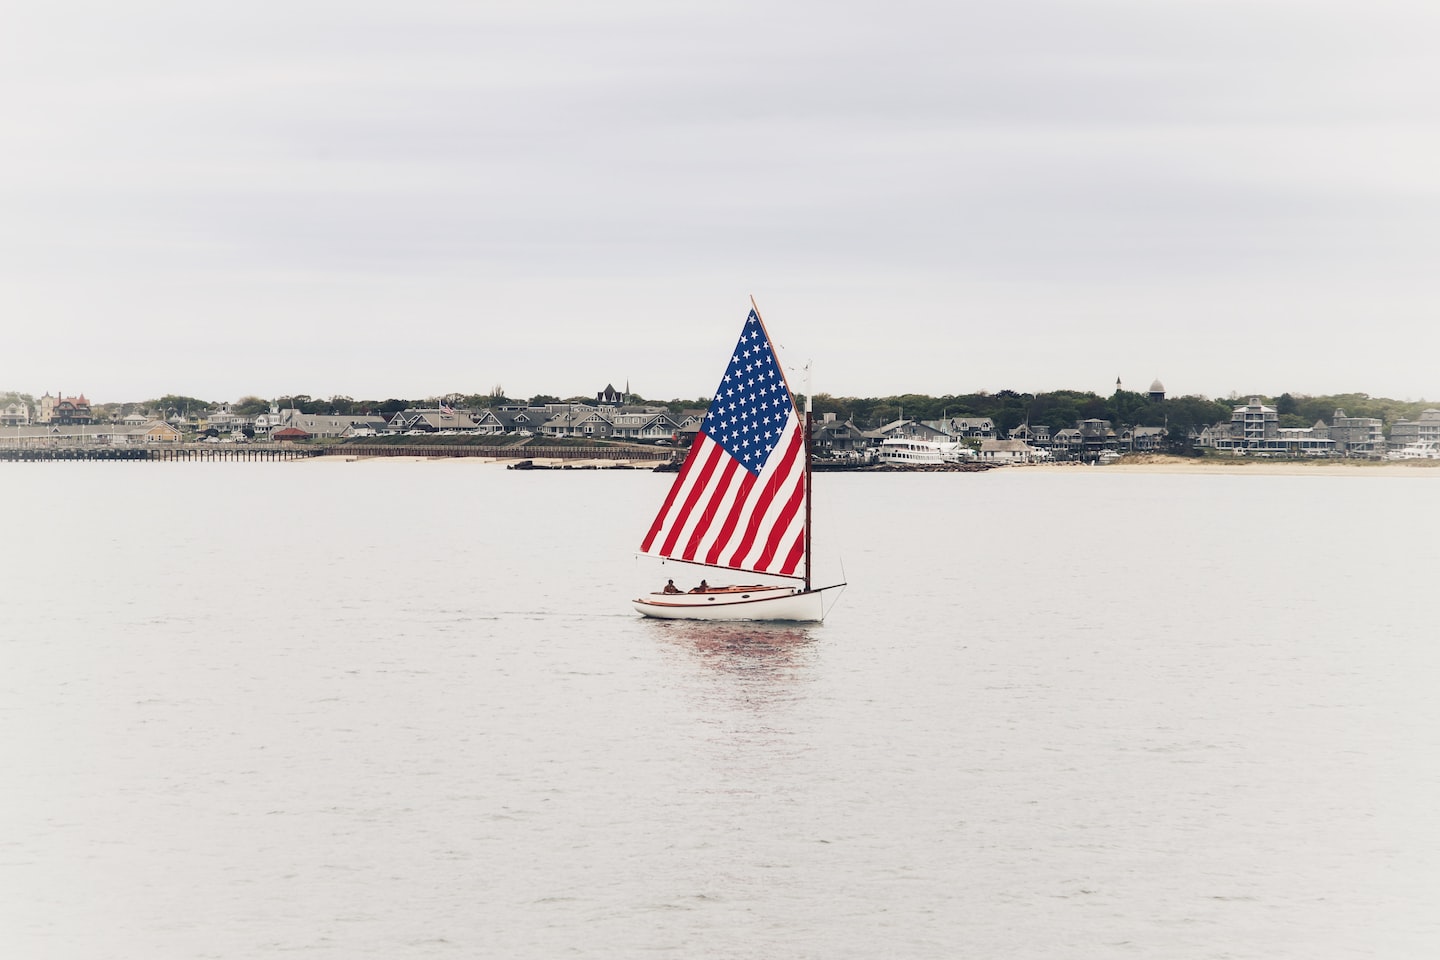 Ein Segelboot, dessen Segel die Farben der US-Amerikanischen Flagge trägt